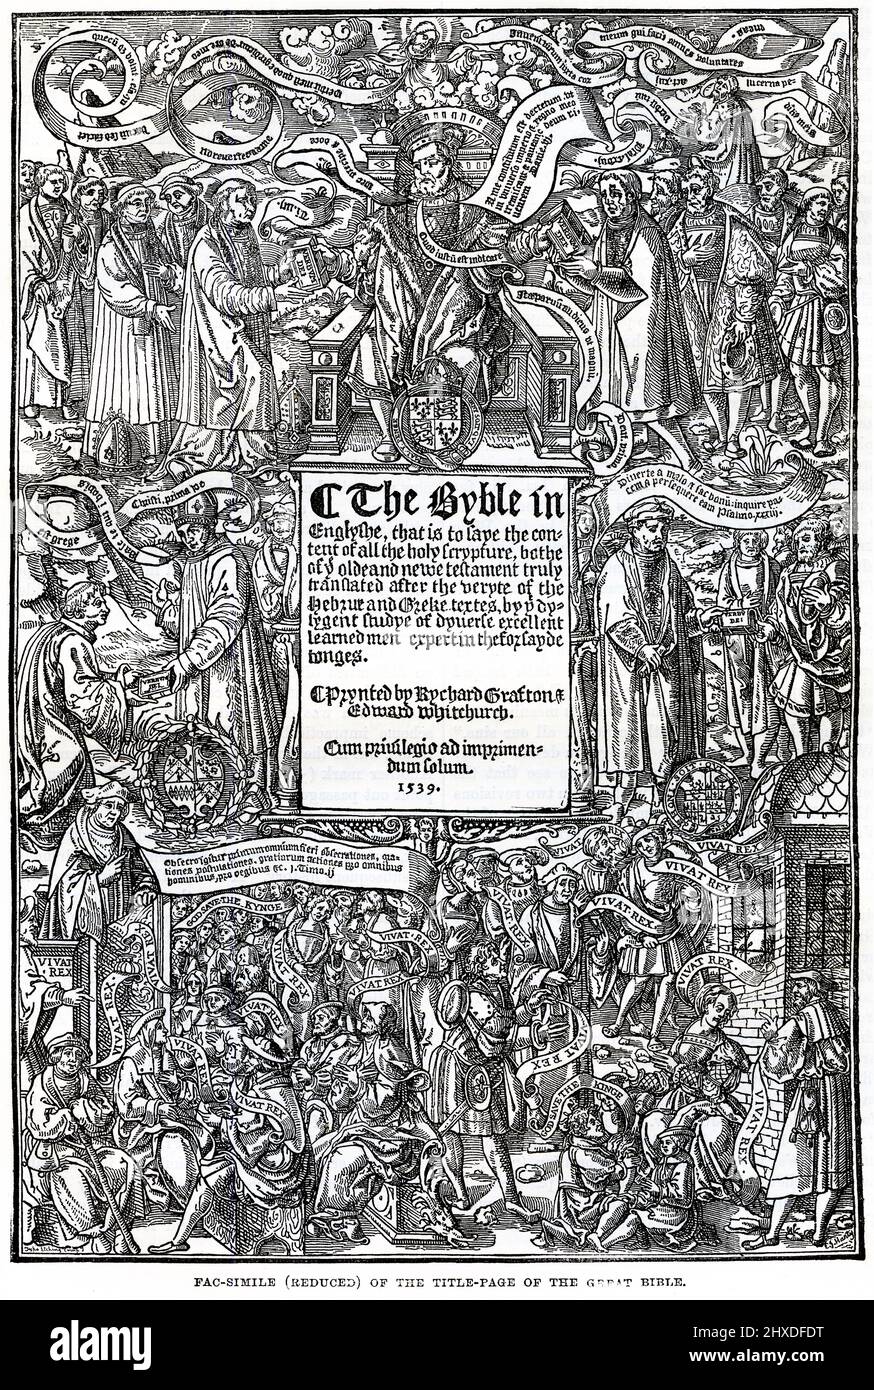 La gravure d'une page de titre de la Grande Bible de 1539 a été la première édition autorisée de la Bible en anglais, autorisée par le roi Henri VIII d'Angleterre à être lue à haute voix dans les services de l'église de l'Église d'Angleterre. Banque D'Images